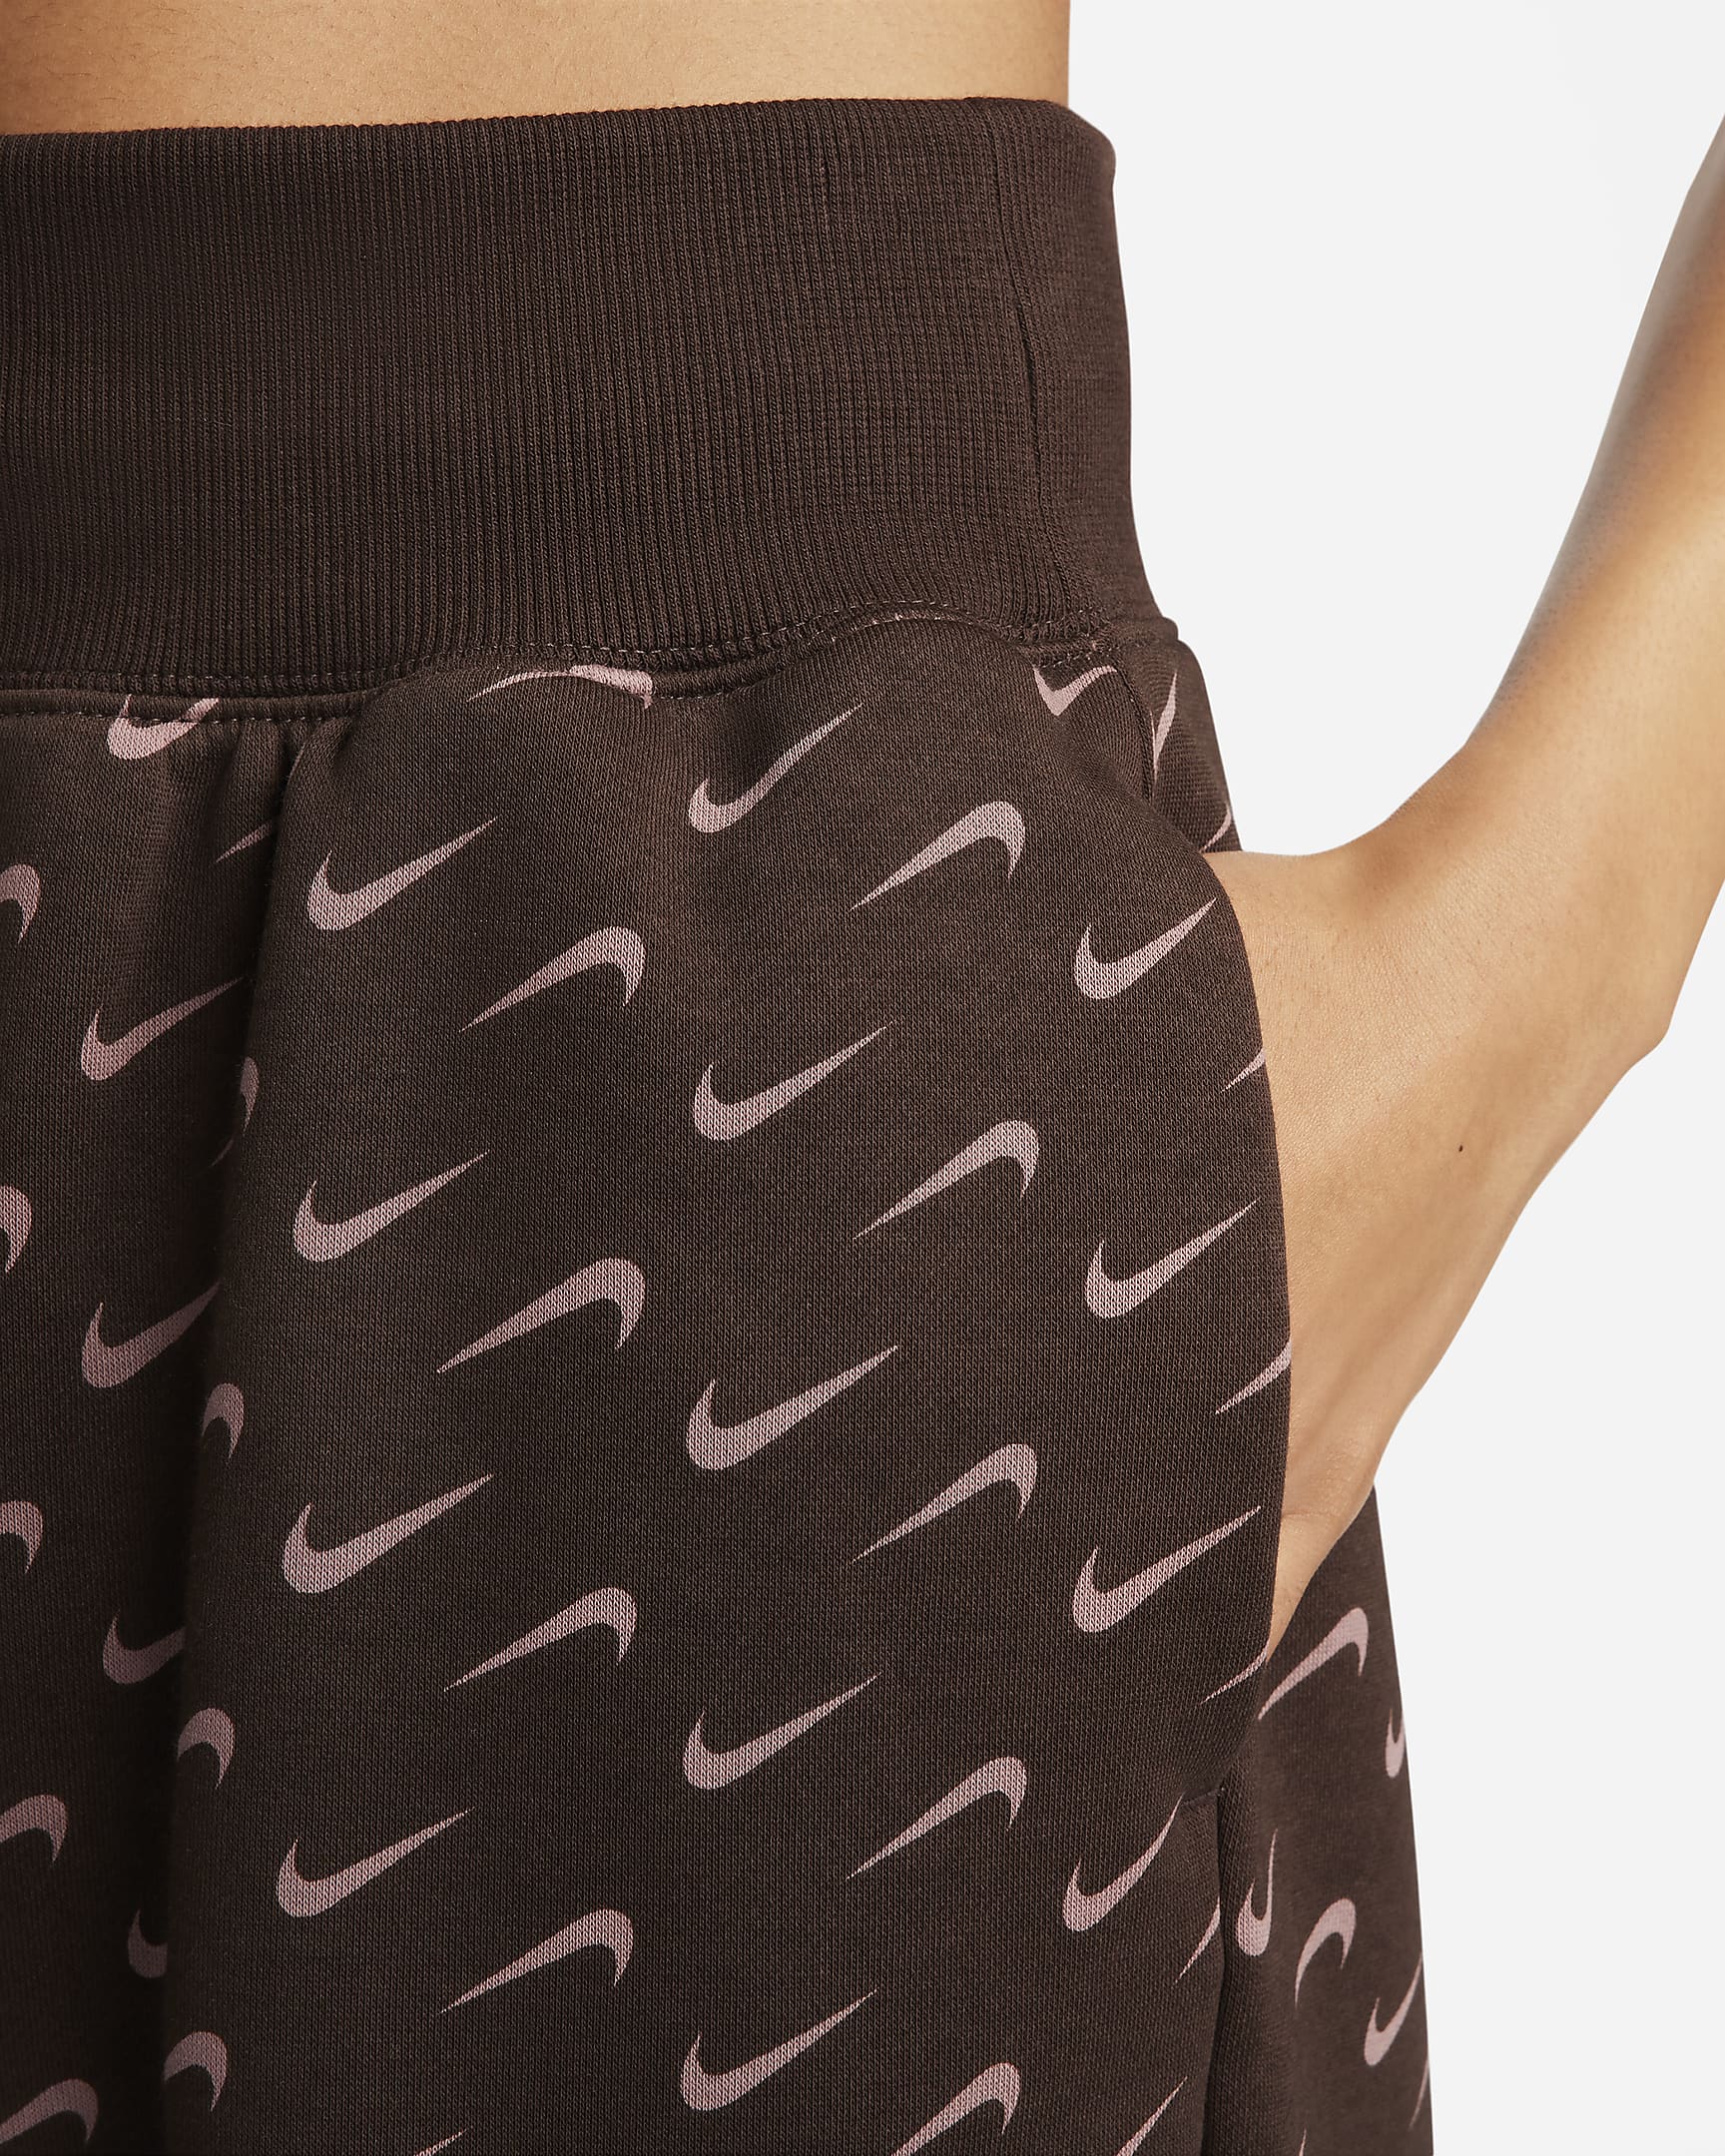 Nike Sportswear Phoenix Fleece Women's Oversized Printed Tracksuit Bottoms - Baroque Brown